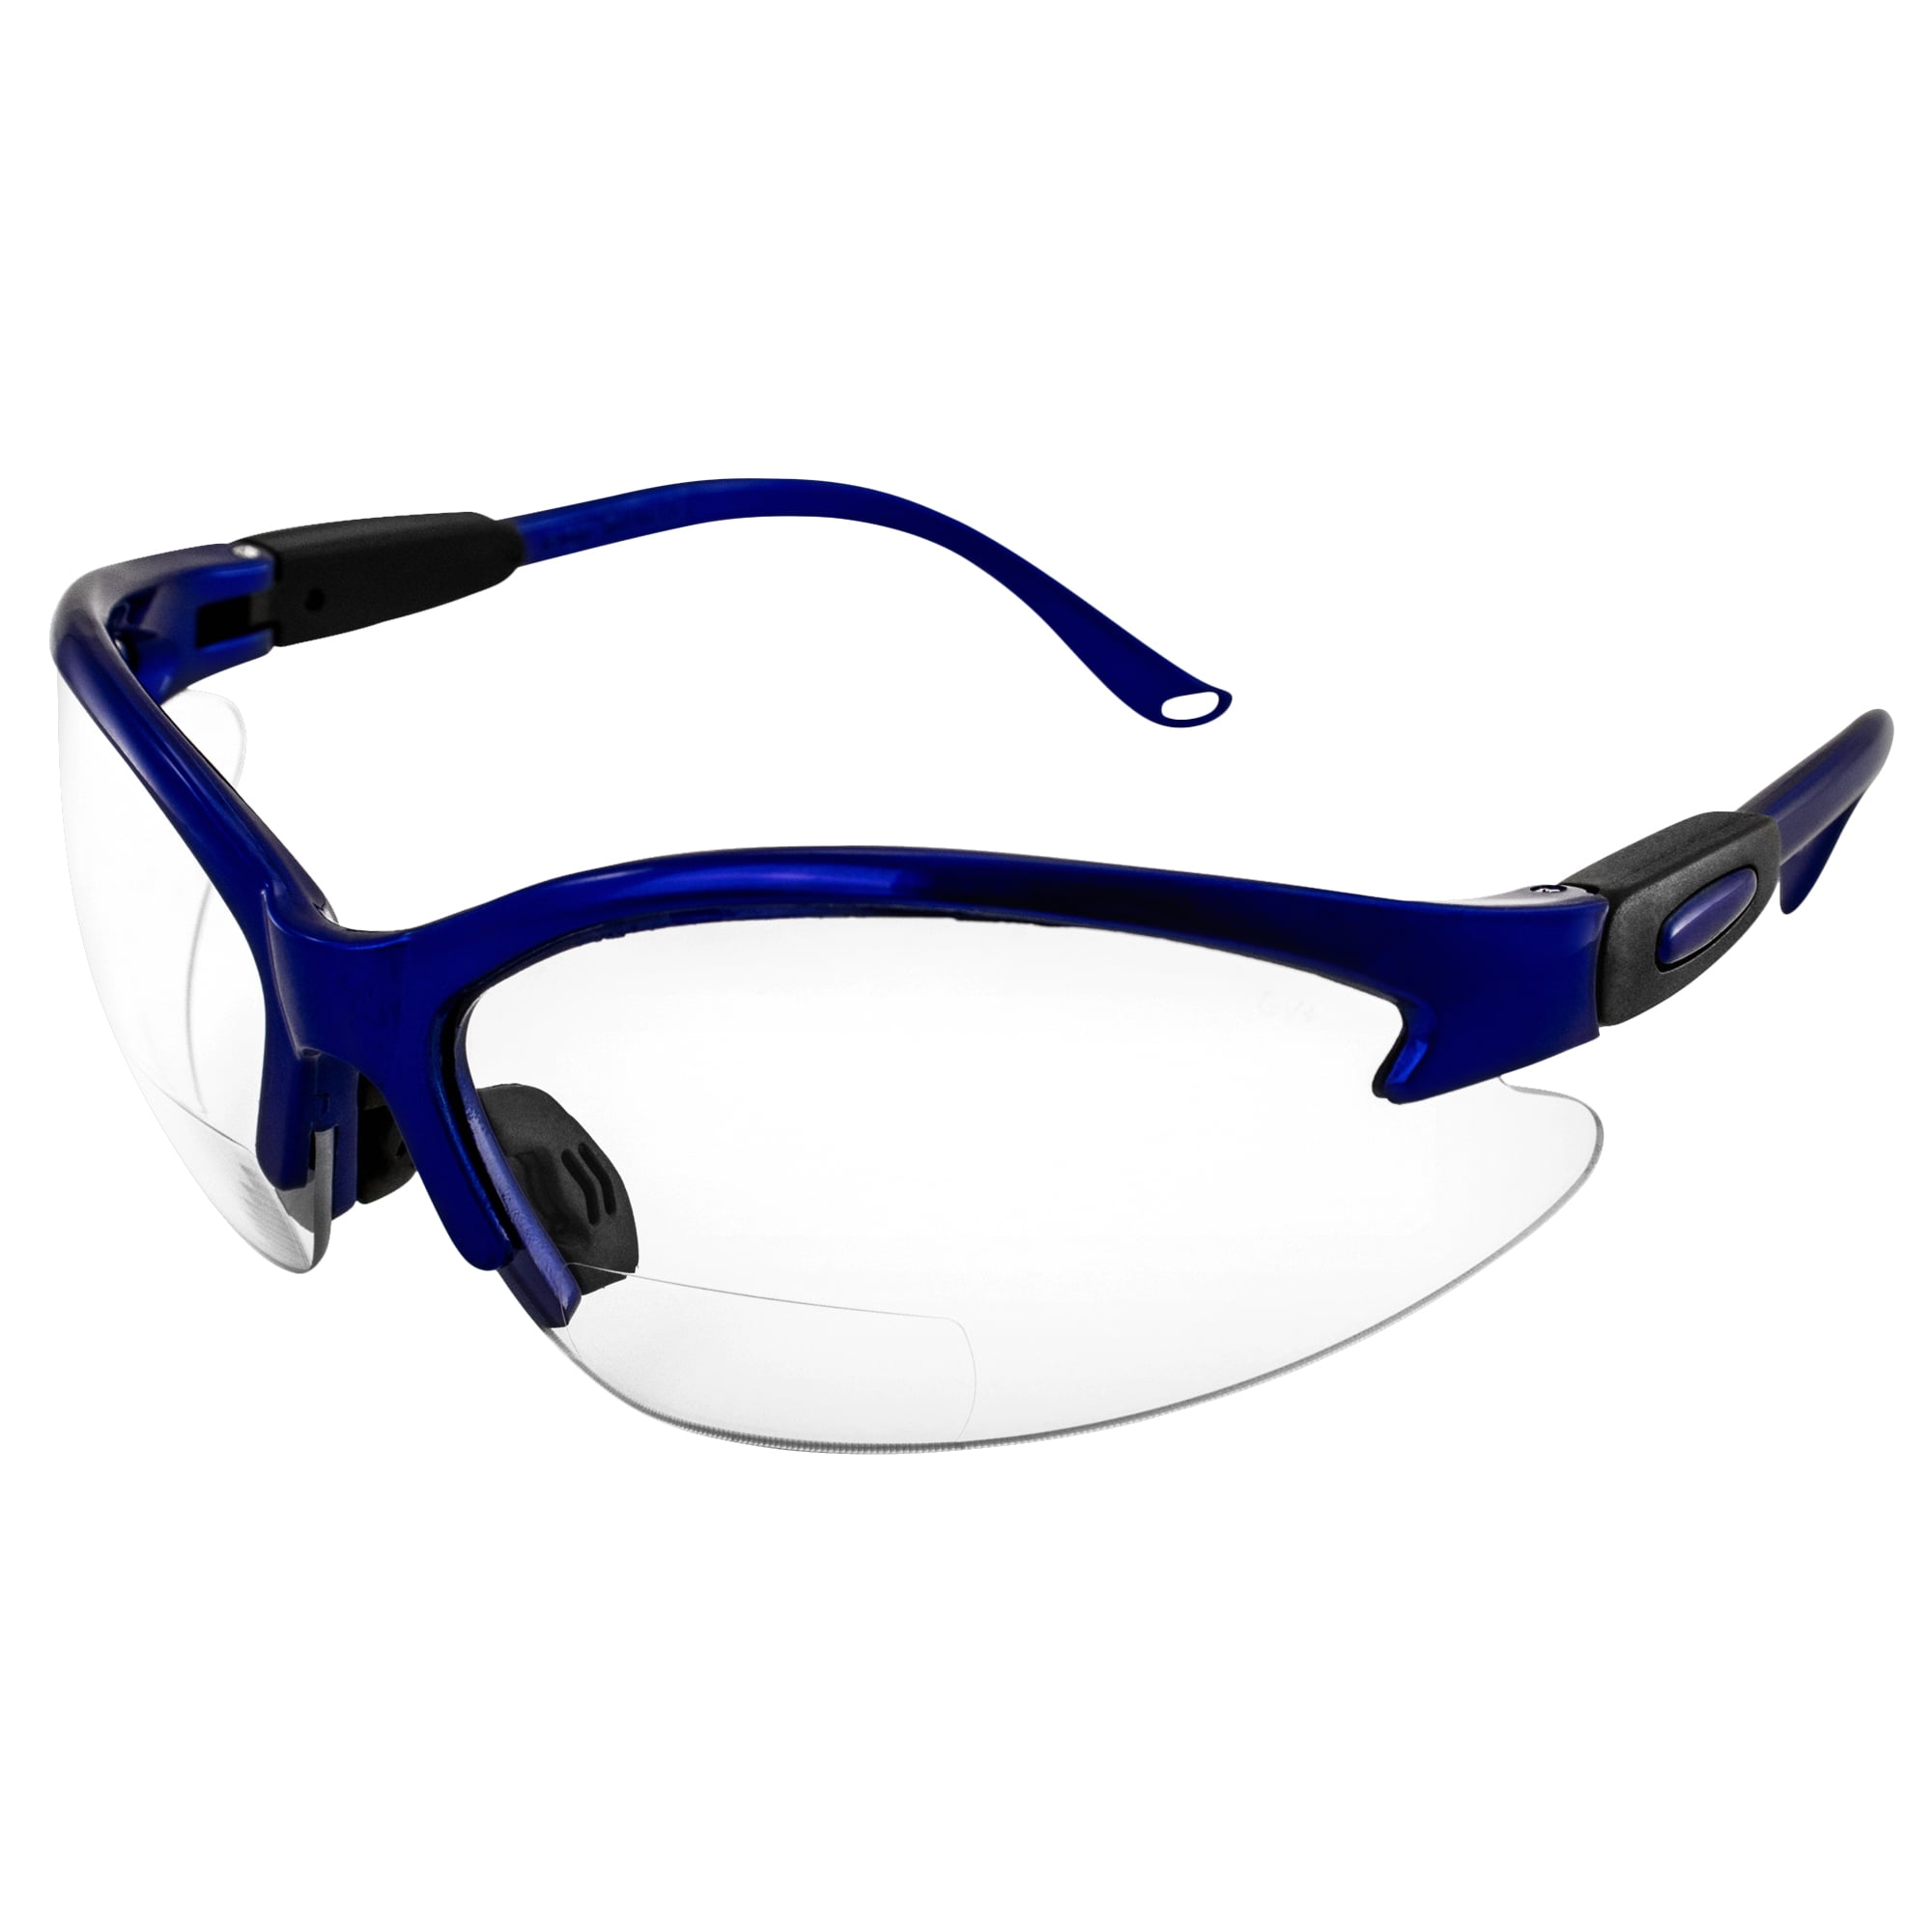 Global Vision Cougar Bifocal Safety Glasses Blue Frame Clear 1.5x  Magnification Lens ANSI Z87.1 